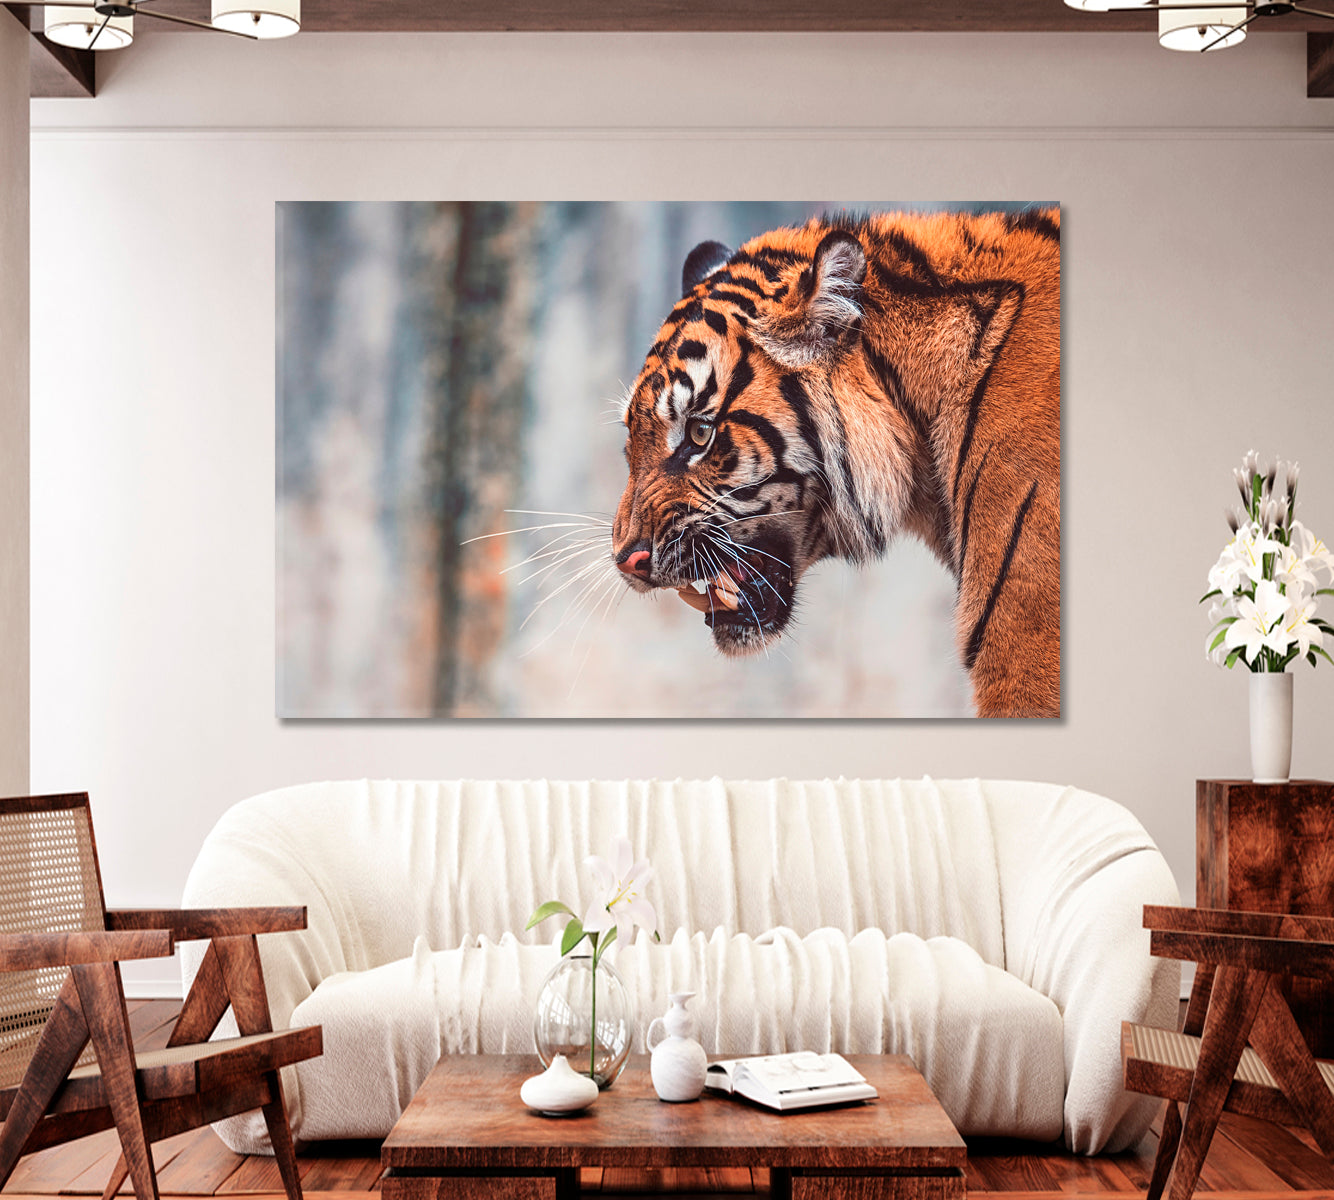 Angry Sumatran Tiger Canvas Print-Canvas Print-CetArt-1 Panel-24x16 inches-CetArt